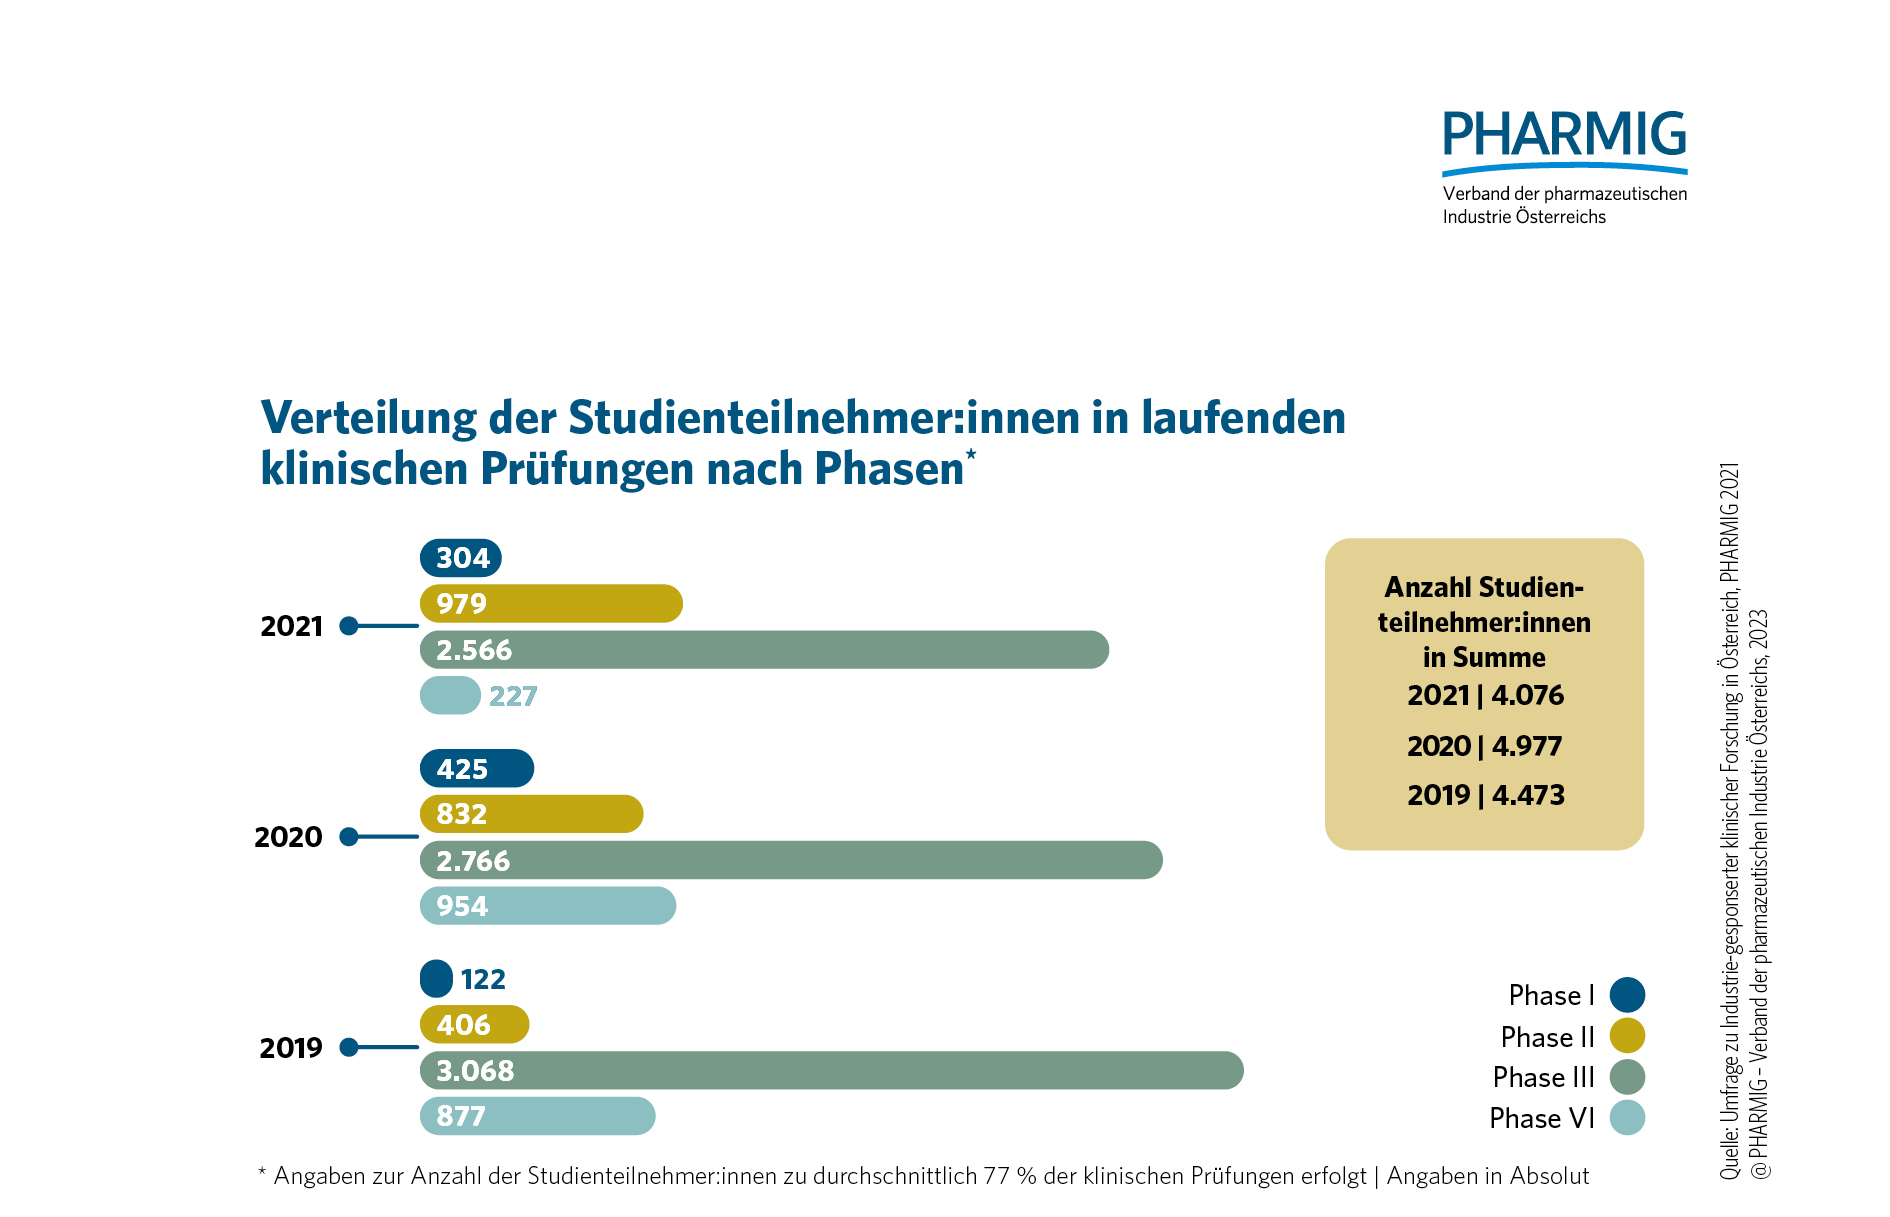 © 4.2 Verteilung der Studienteilnehmerinnen in laufenden klinischen Prüfungen nach Phasen (2019-2021)